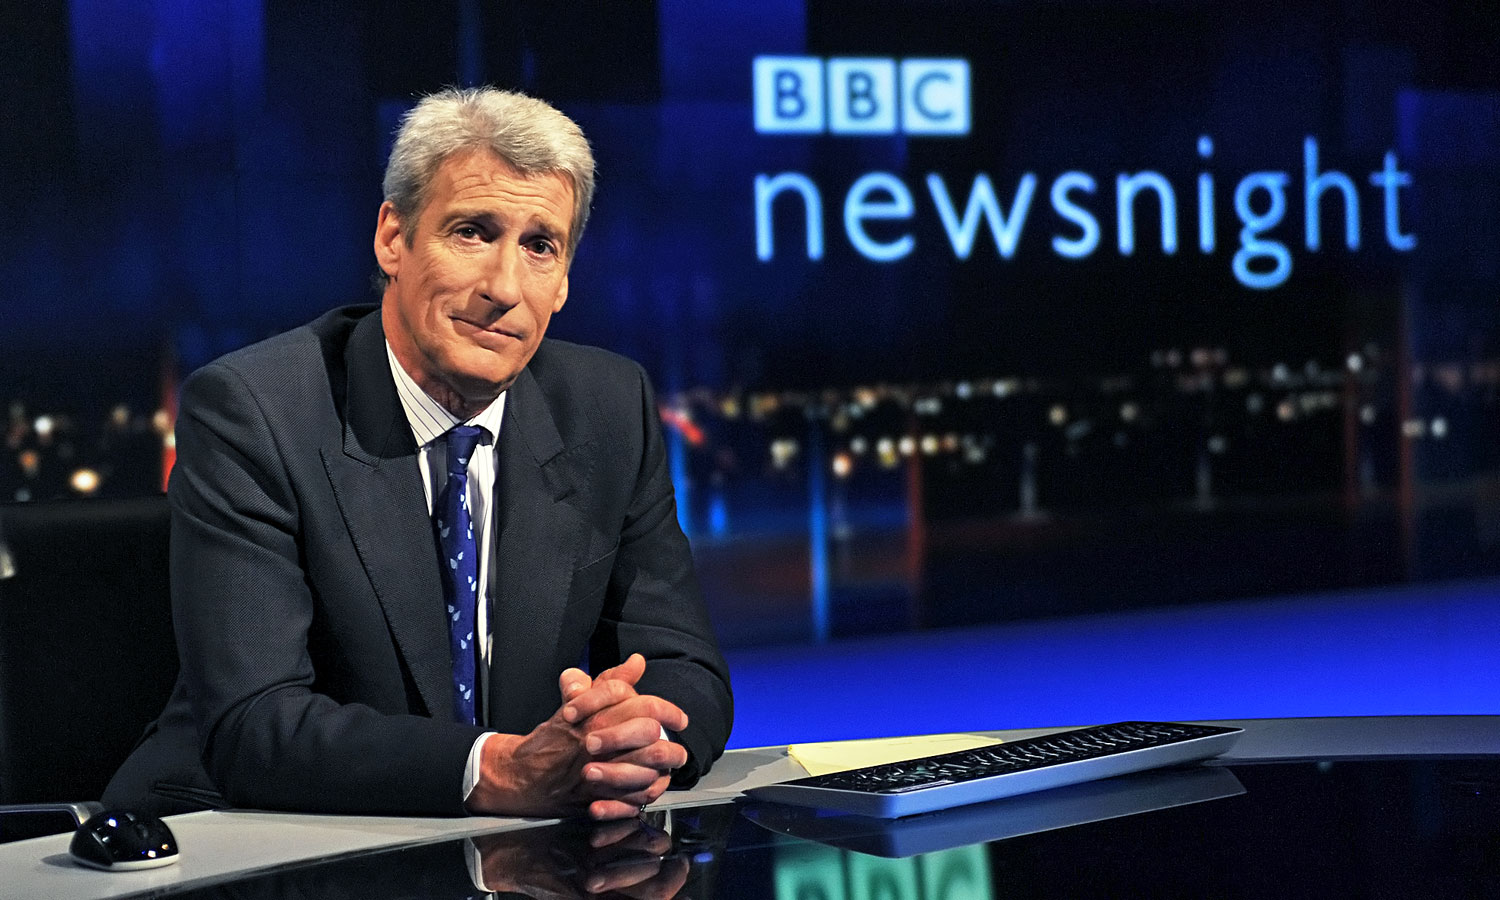 Jeremy Paxman, a BBC műsorvezetője, „a politikusok réme”